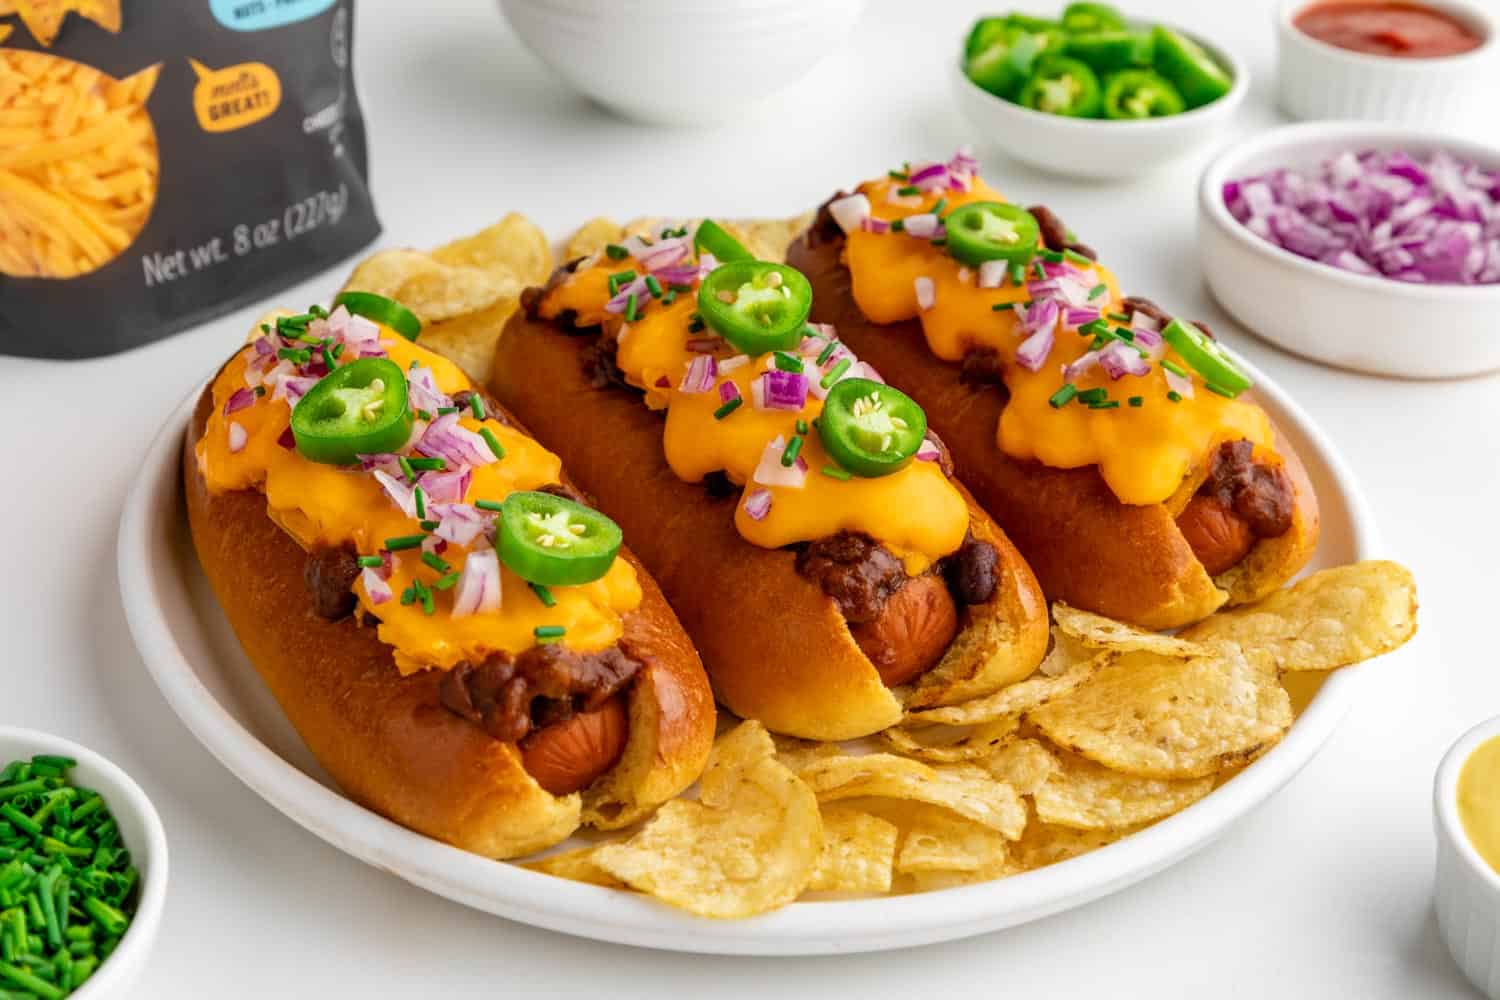 Vegan Chili Dogs